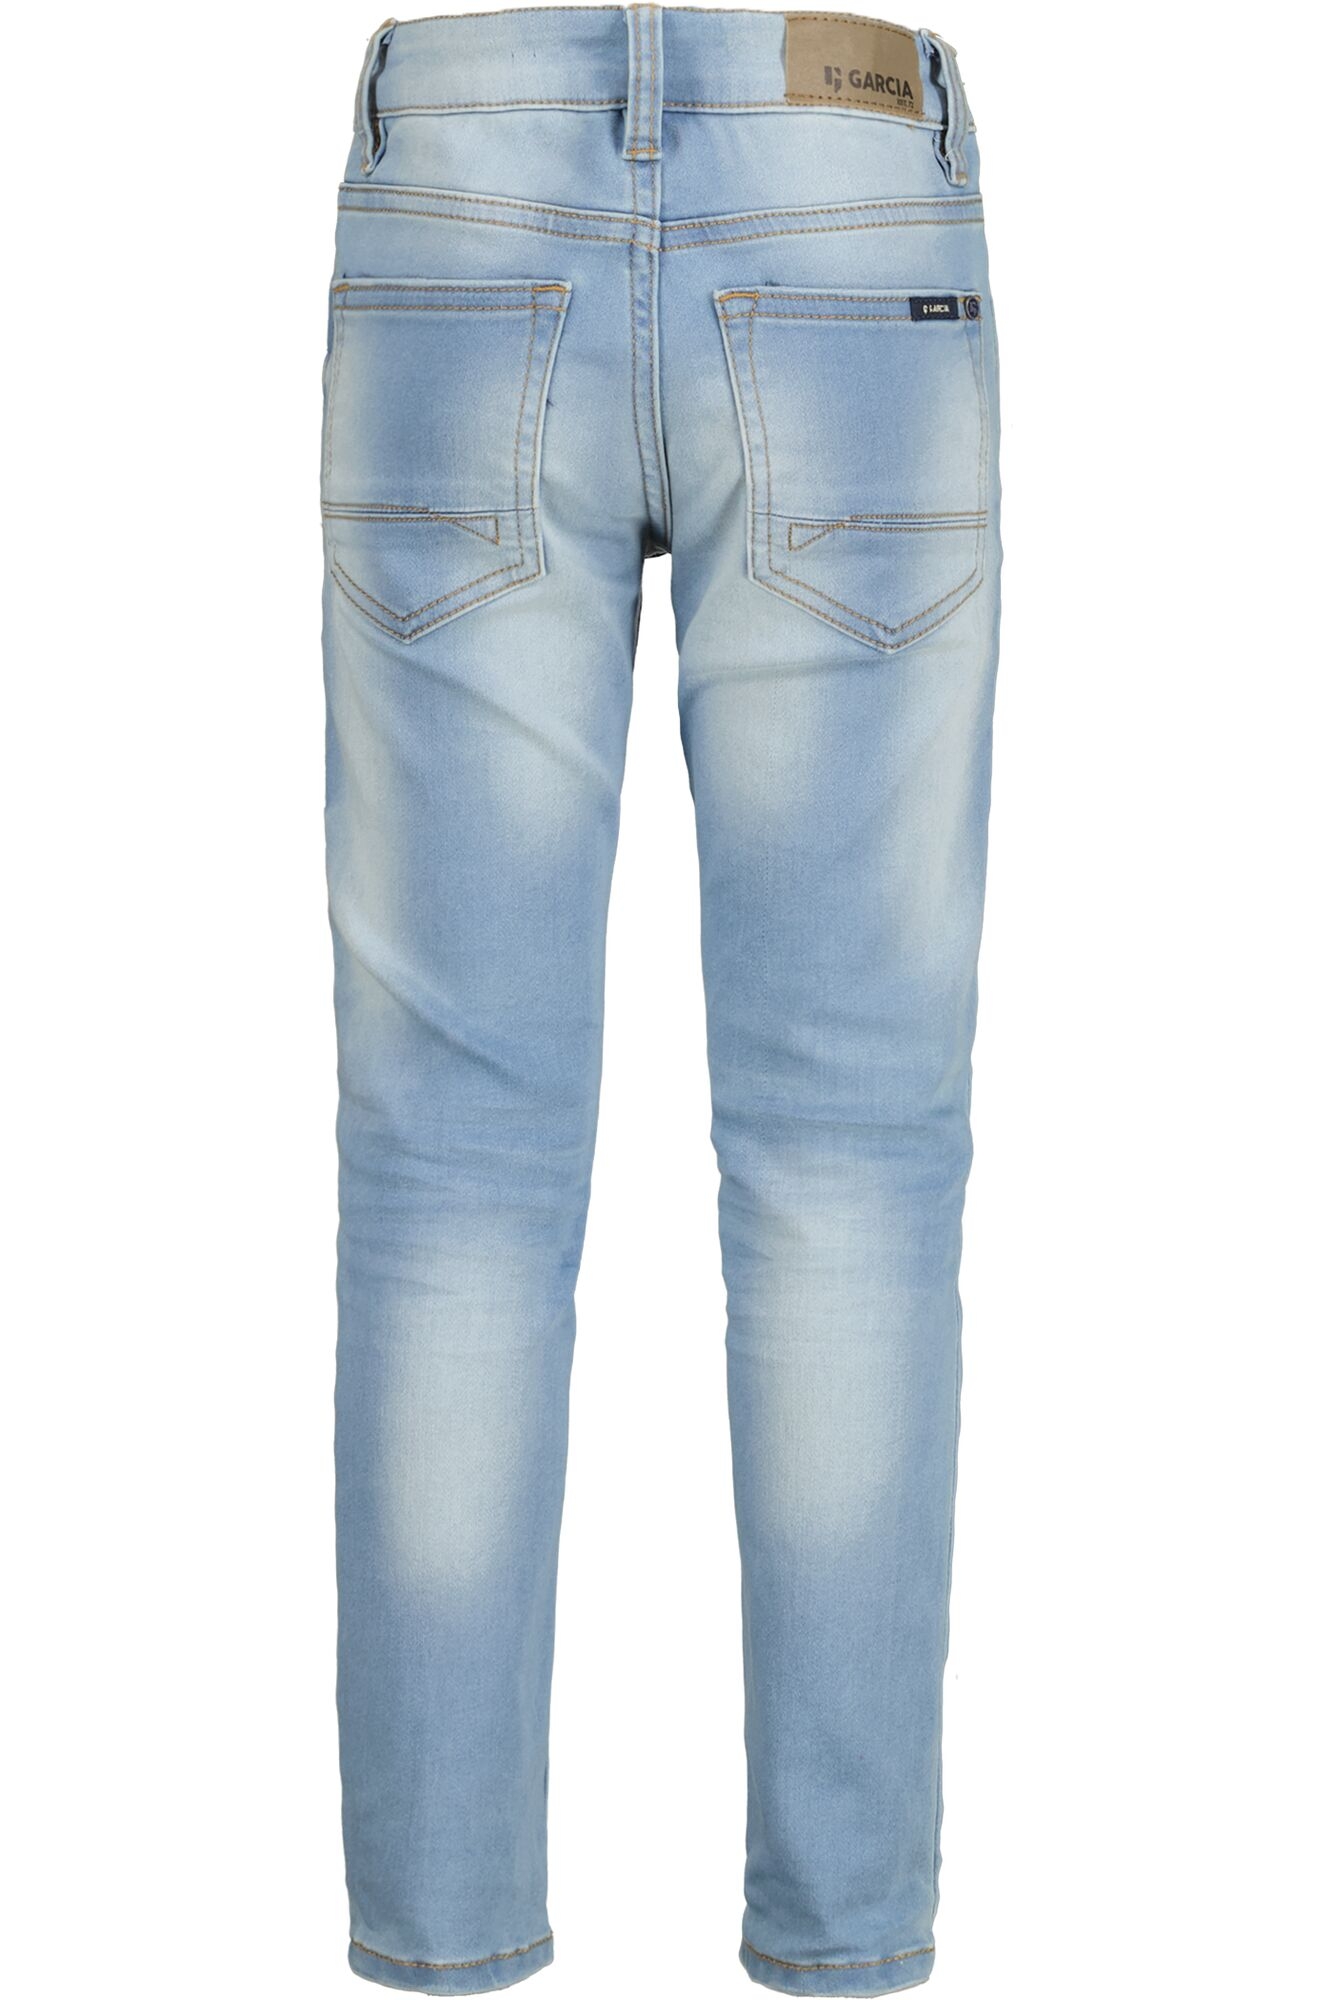 370 10711373 GARCIA Xevi WÖHRL | Jeans kaufen